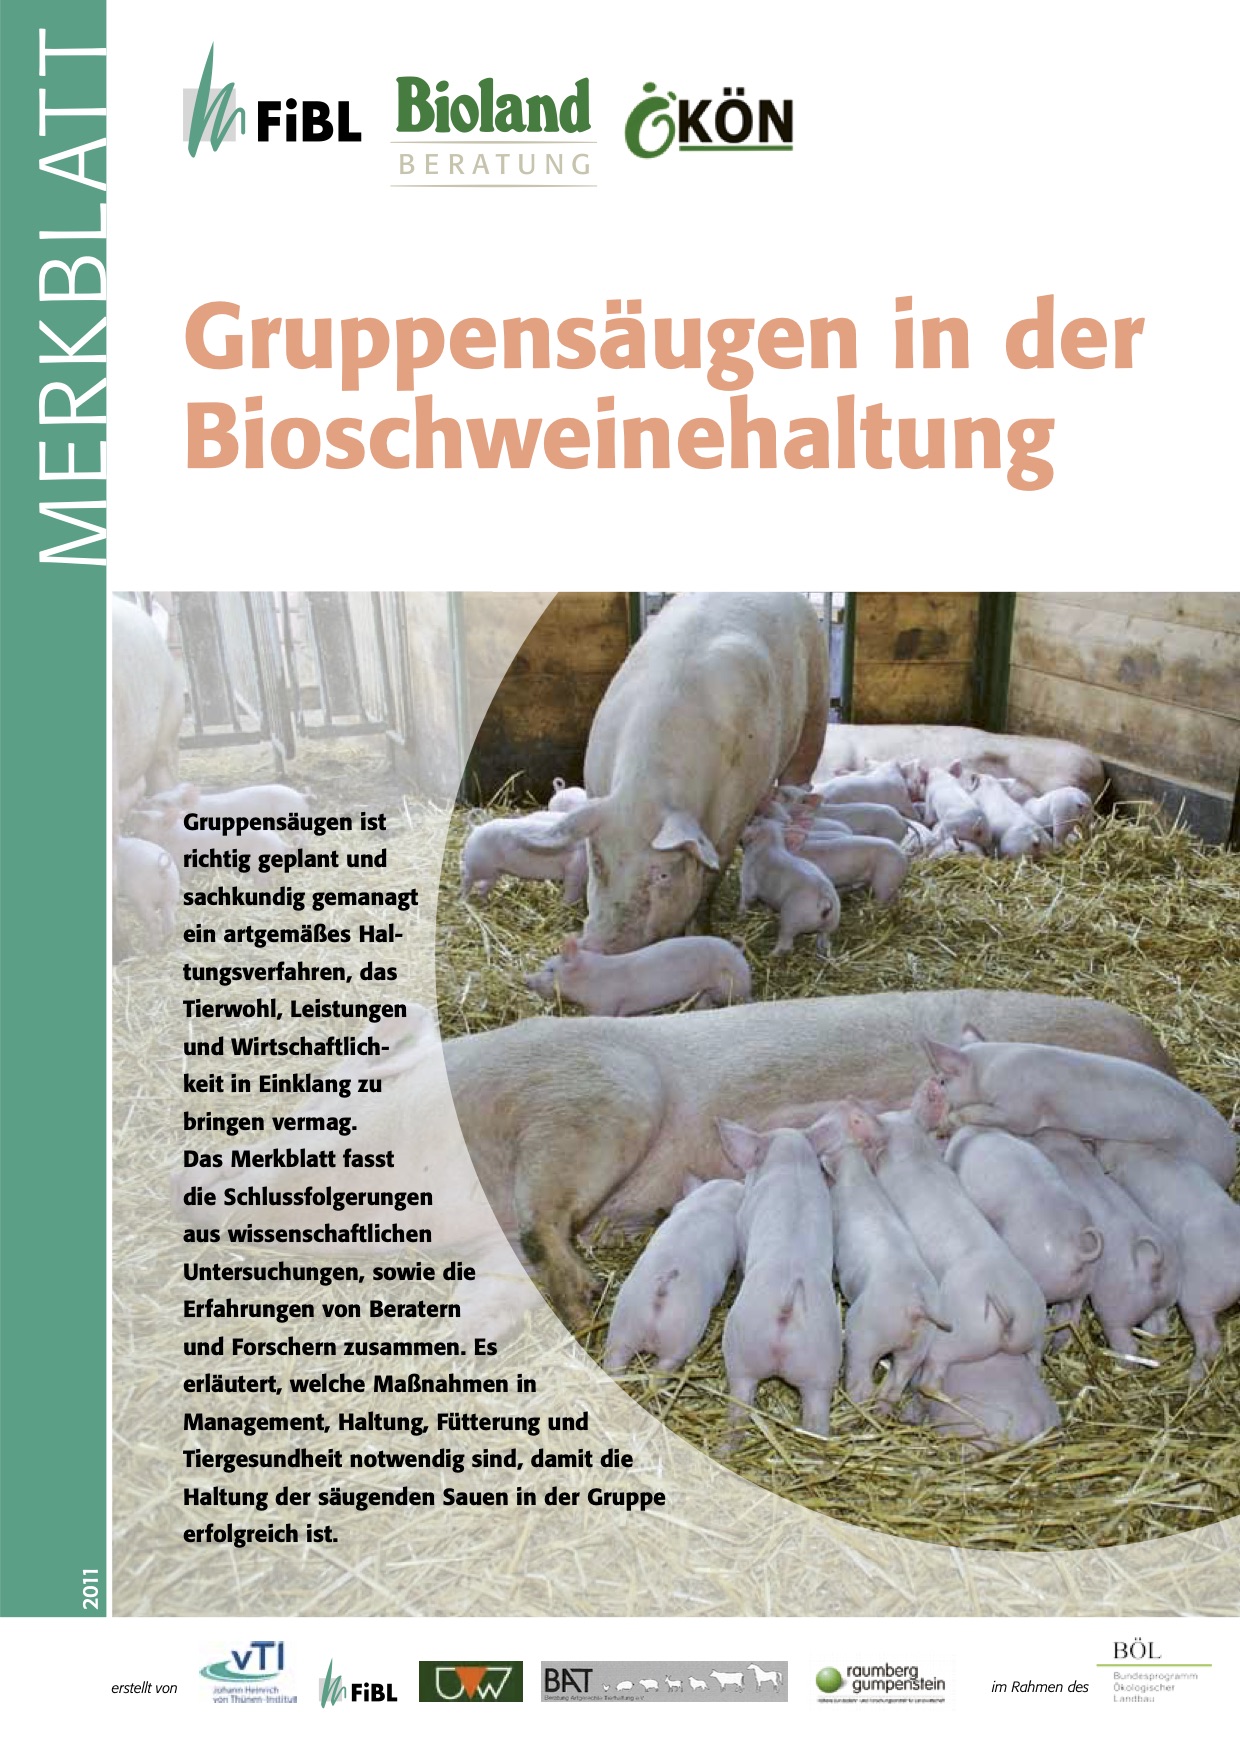 Групово бозаене при биологично свиневъдство (FiBL Factsheet)